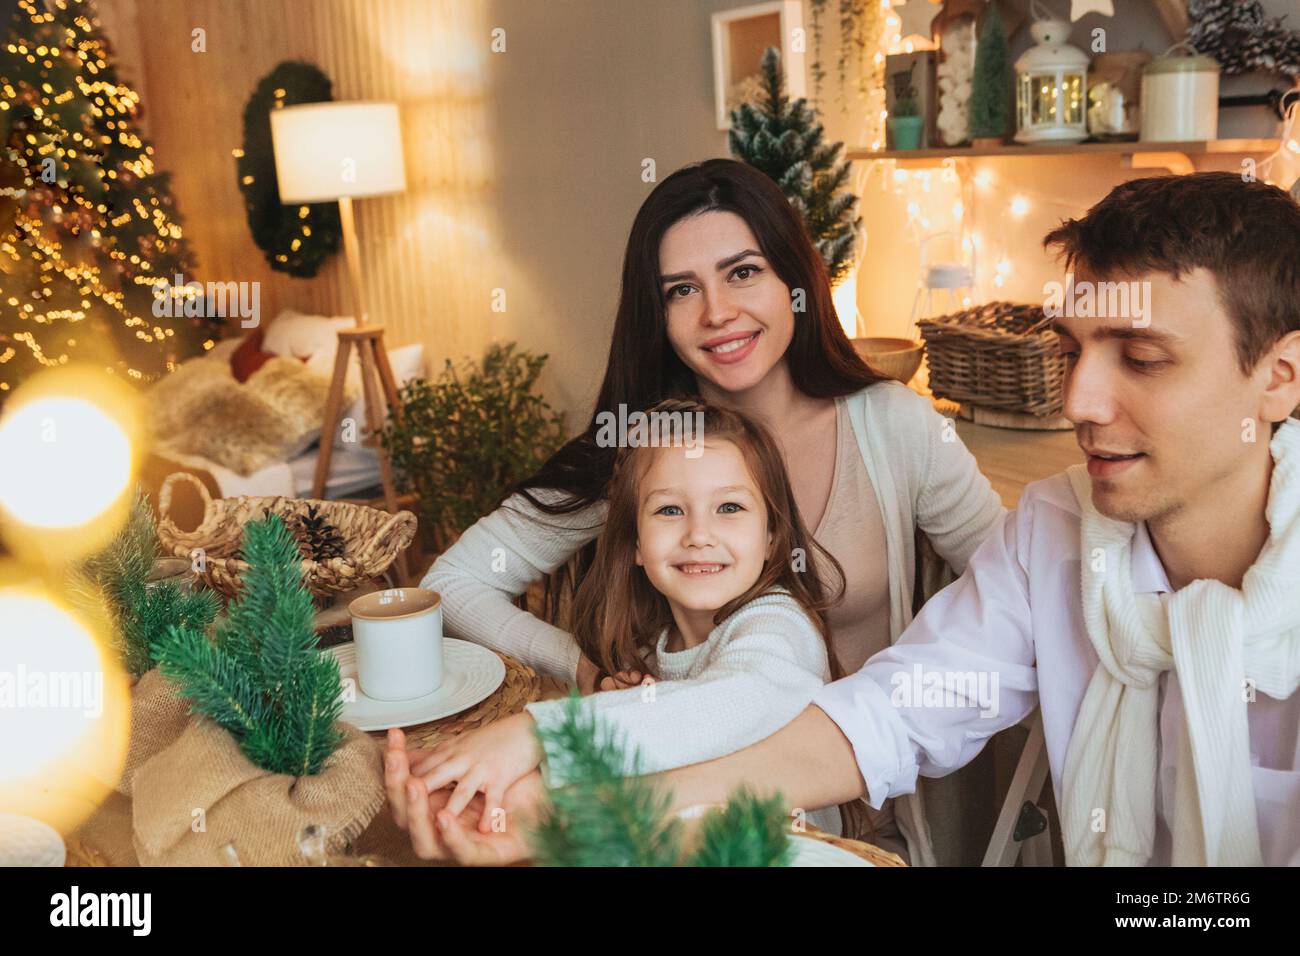 Junge, glückliche europäische Familie mit Kindern, die gemeinsam Weihnachtsferien in gemütlicher Atmosphäre genießen Stockfoto